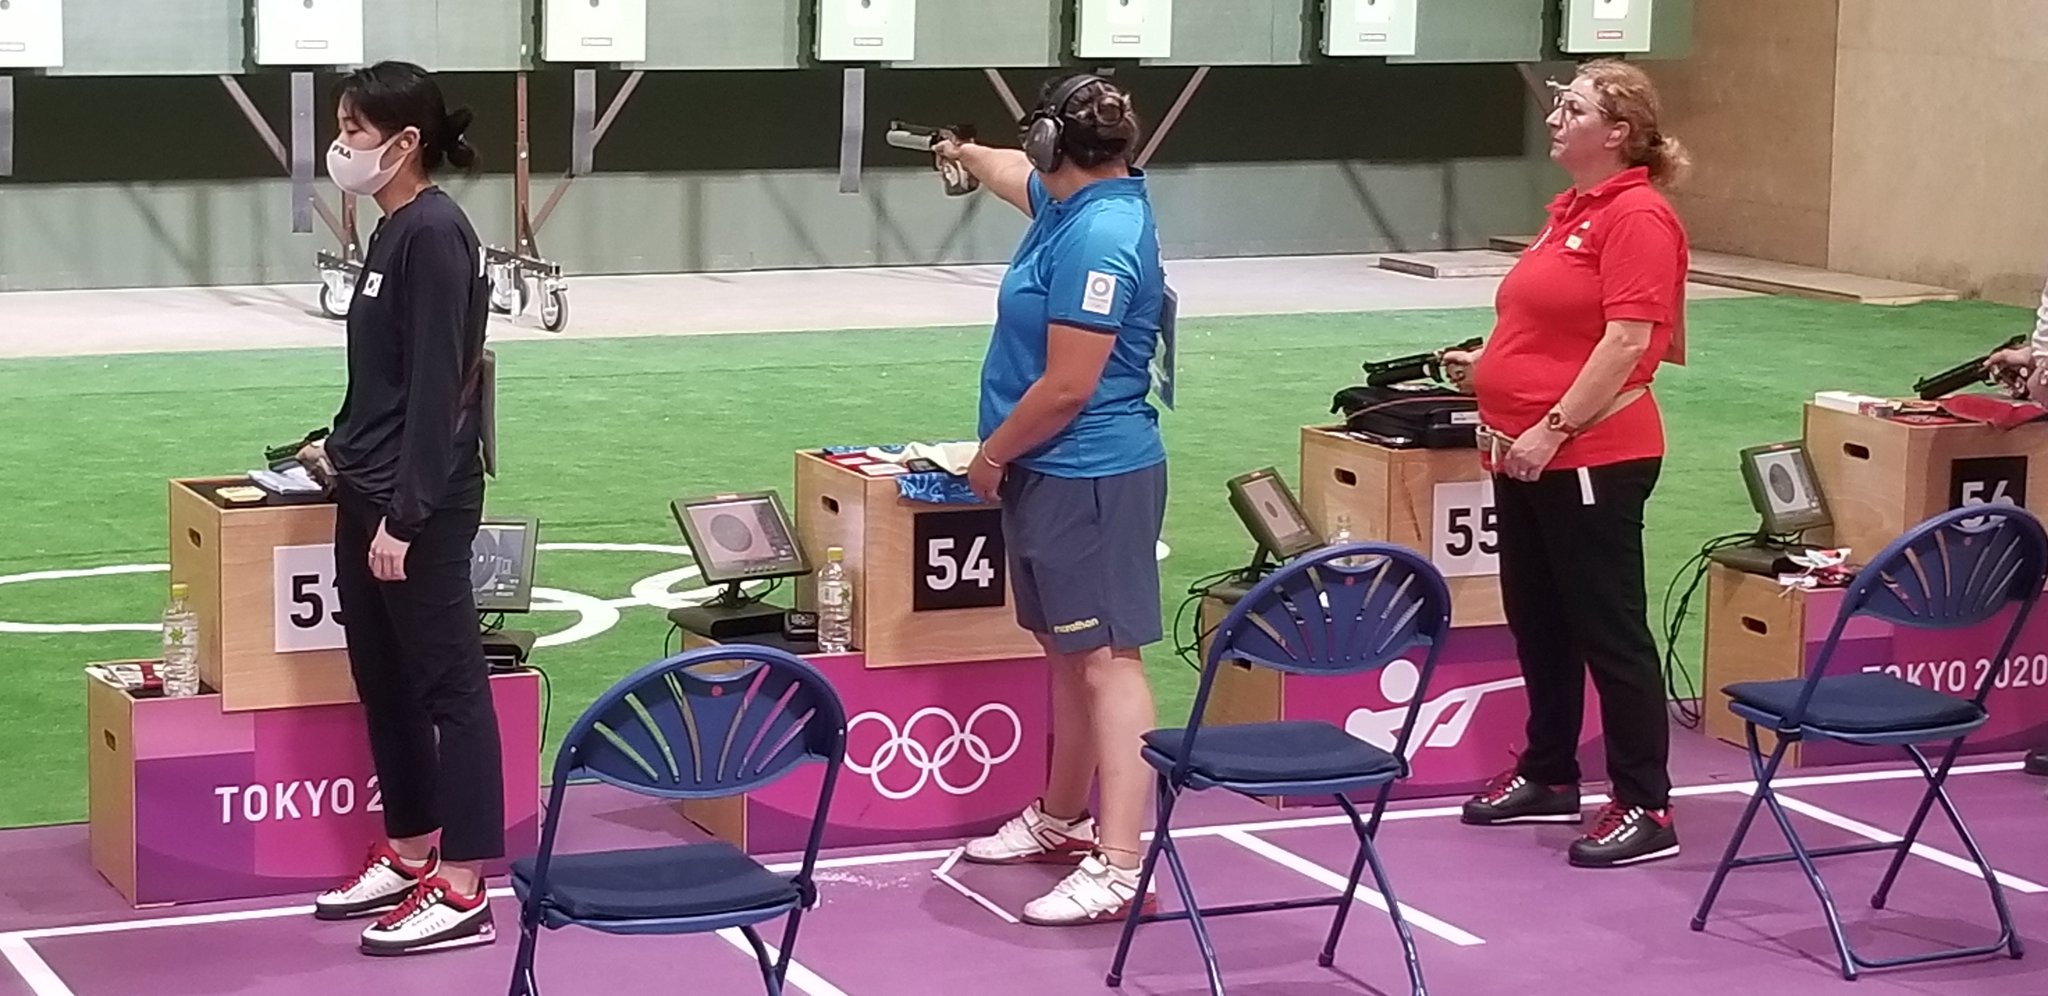 Diana Durango durante su participación en la prueba de tiro deportivo, en la modalidad de pistola de aire, 10 metros. Foto: Comité Olímpico Ecuatoriano